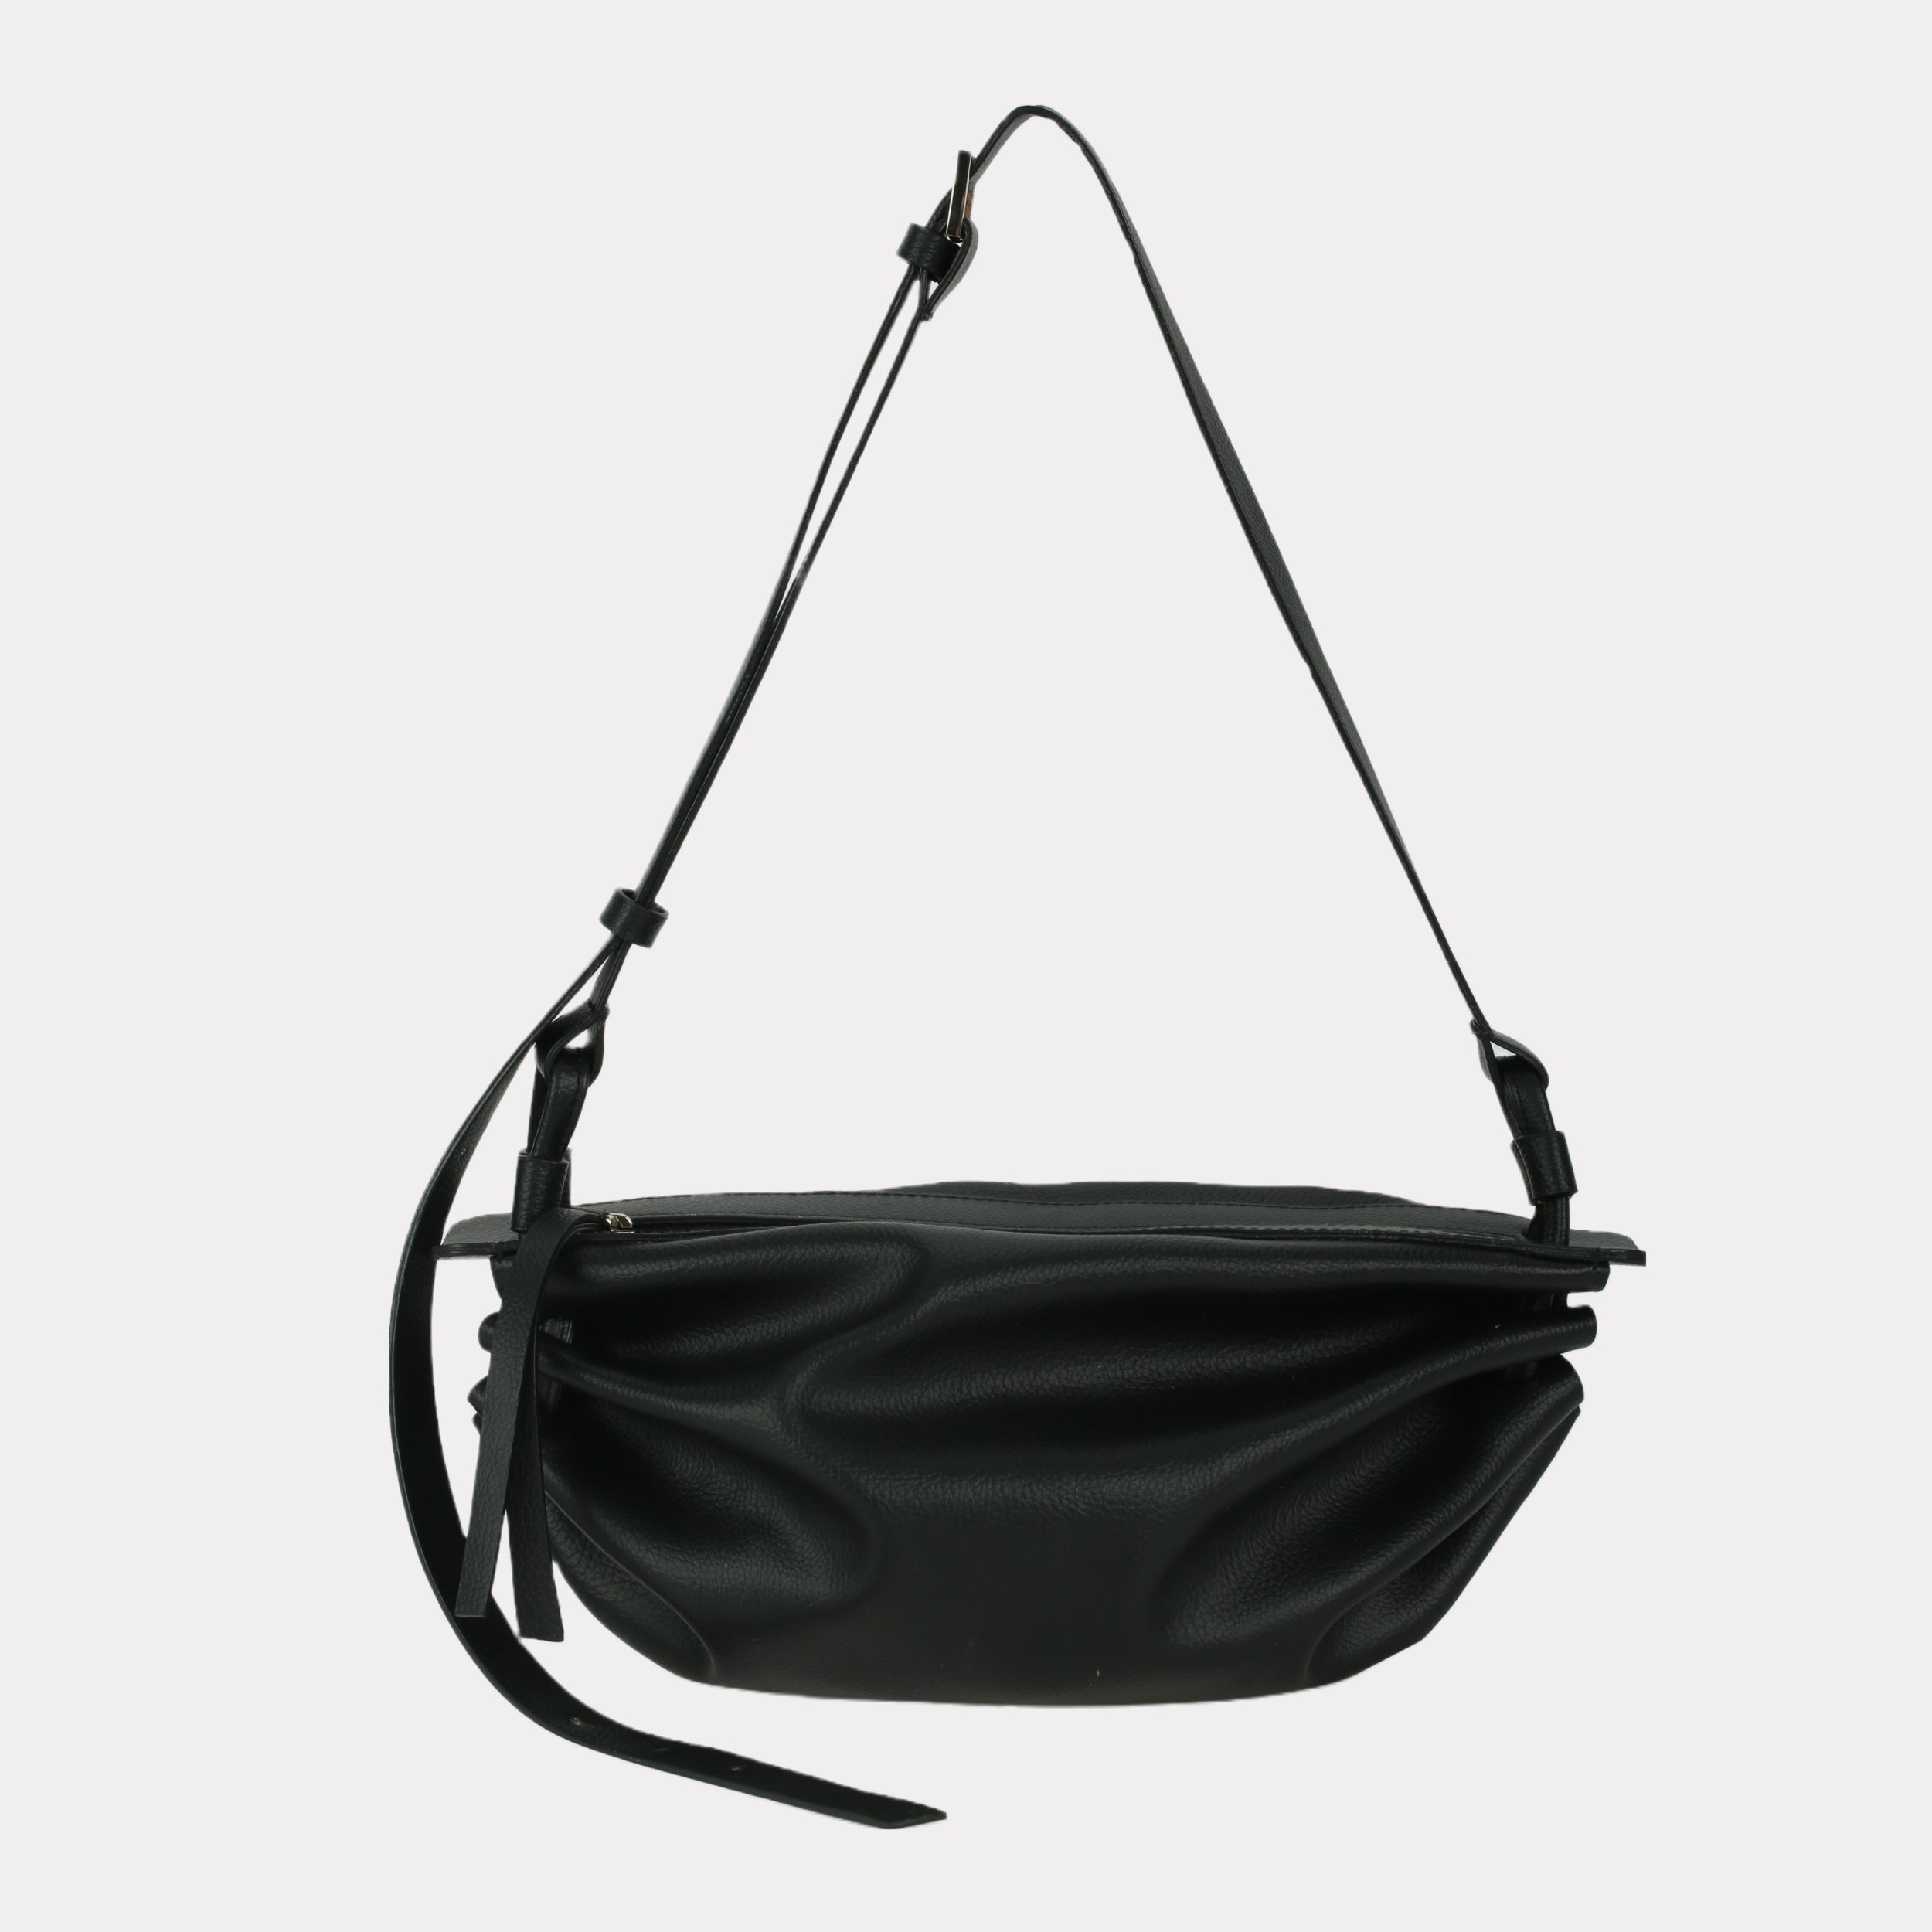 BOAT bag large size (M) black